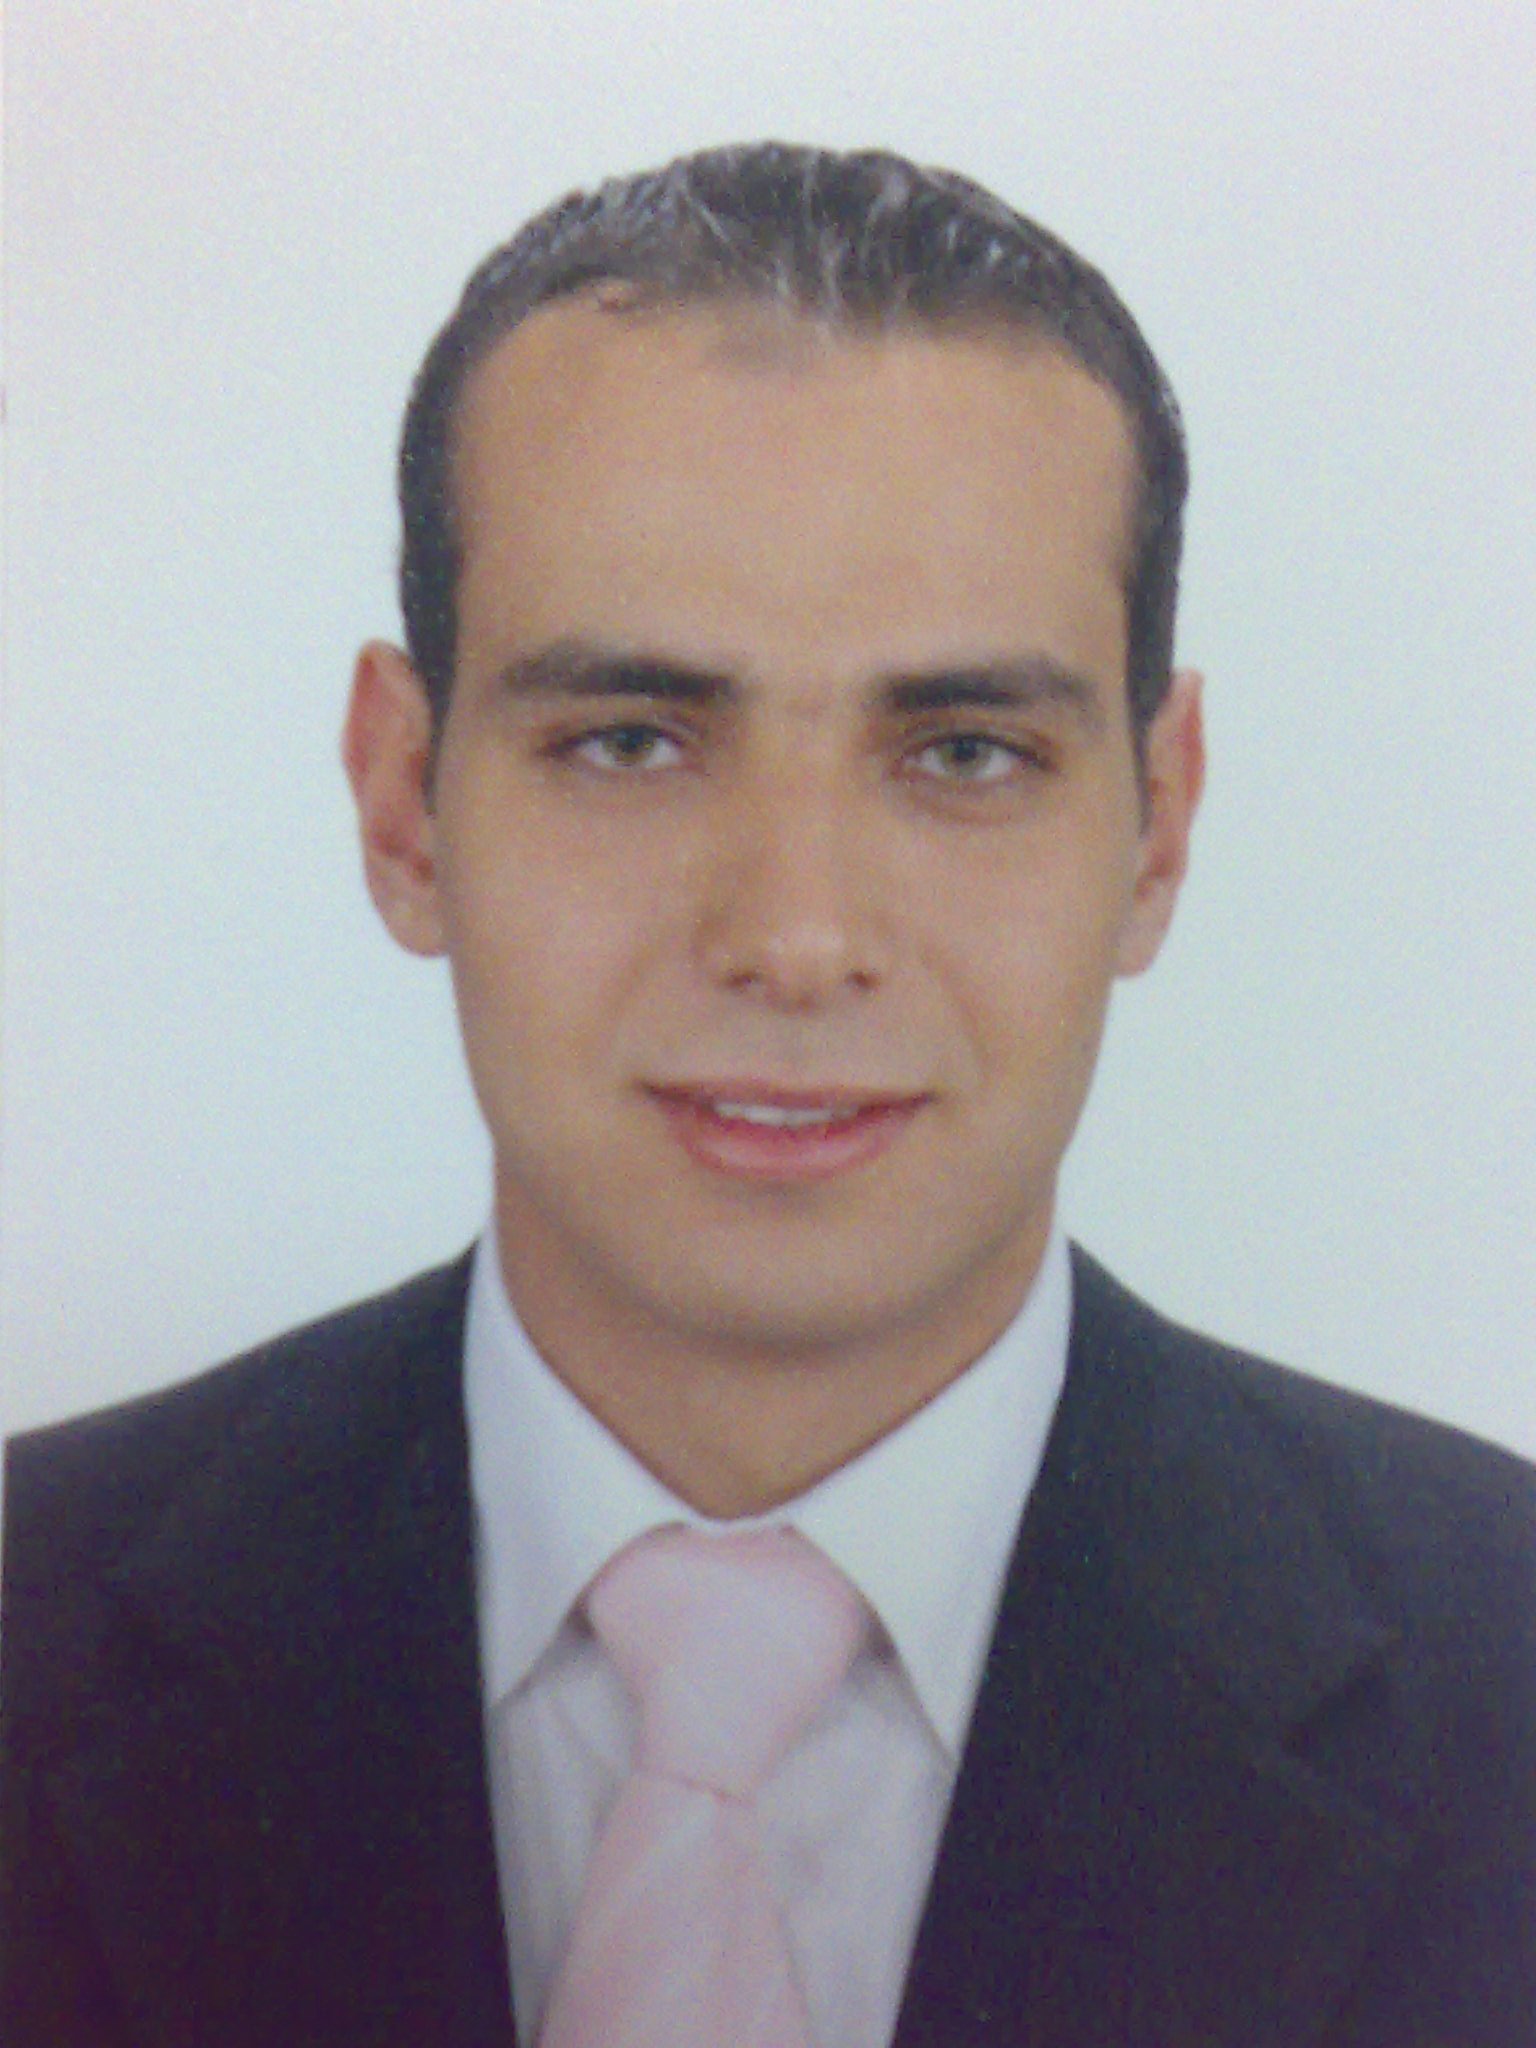 Islam Othman Mohamed